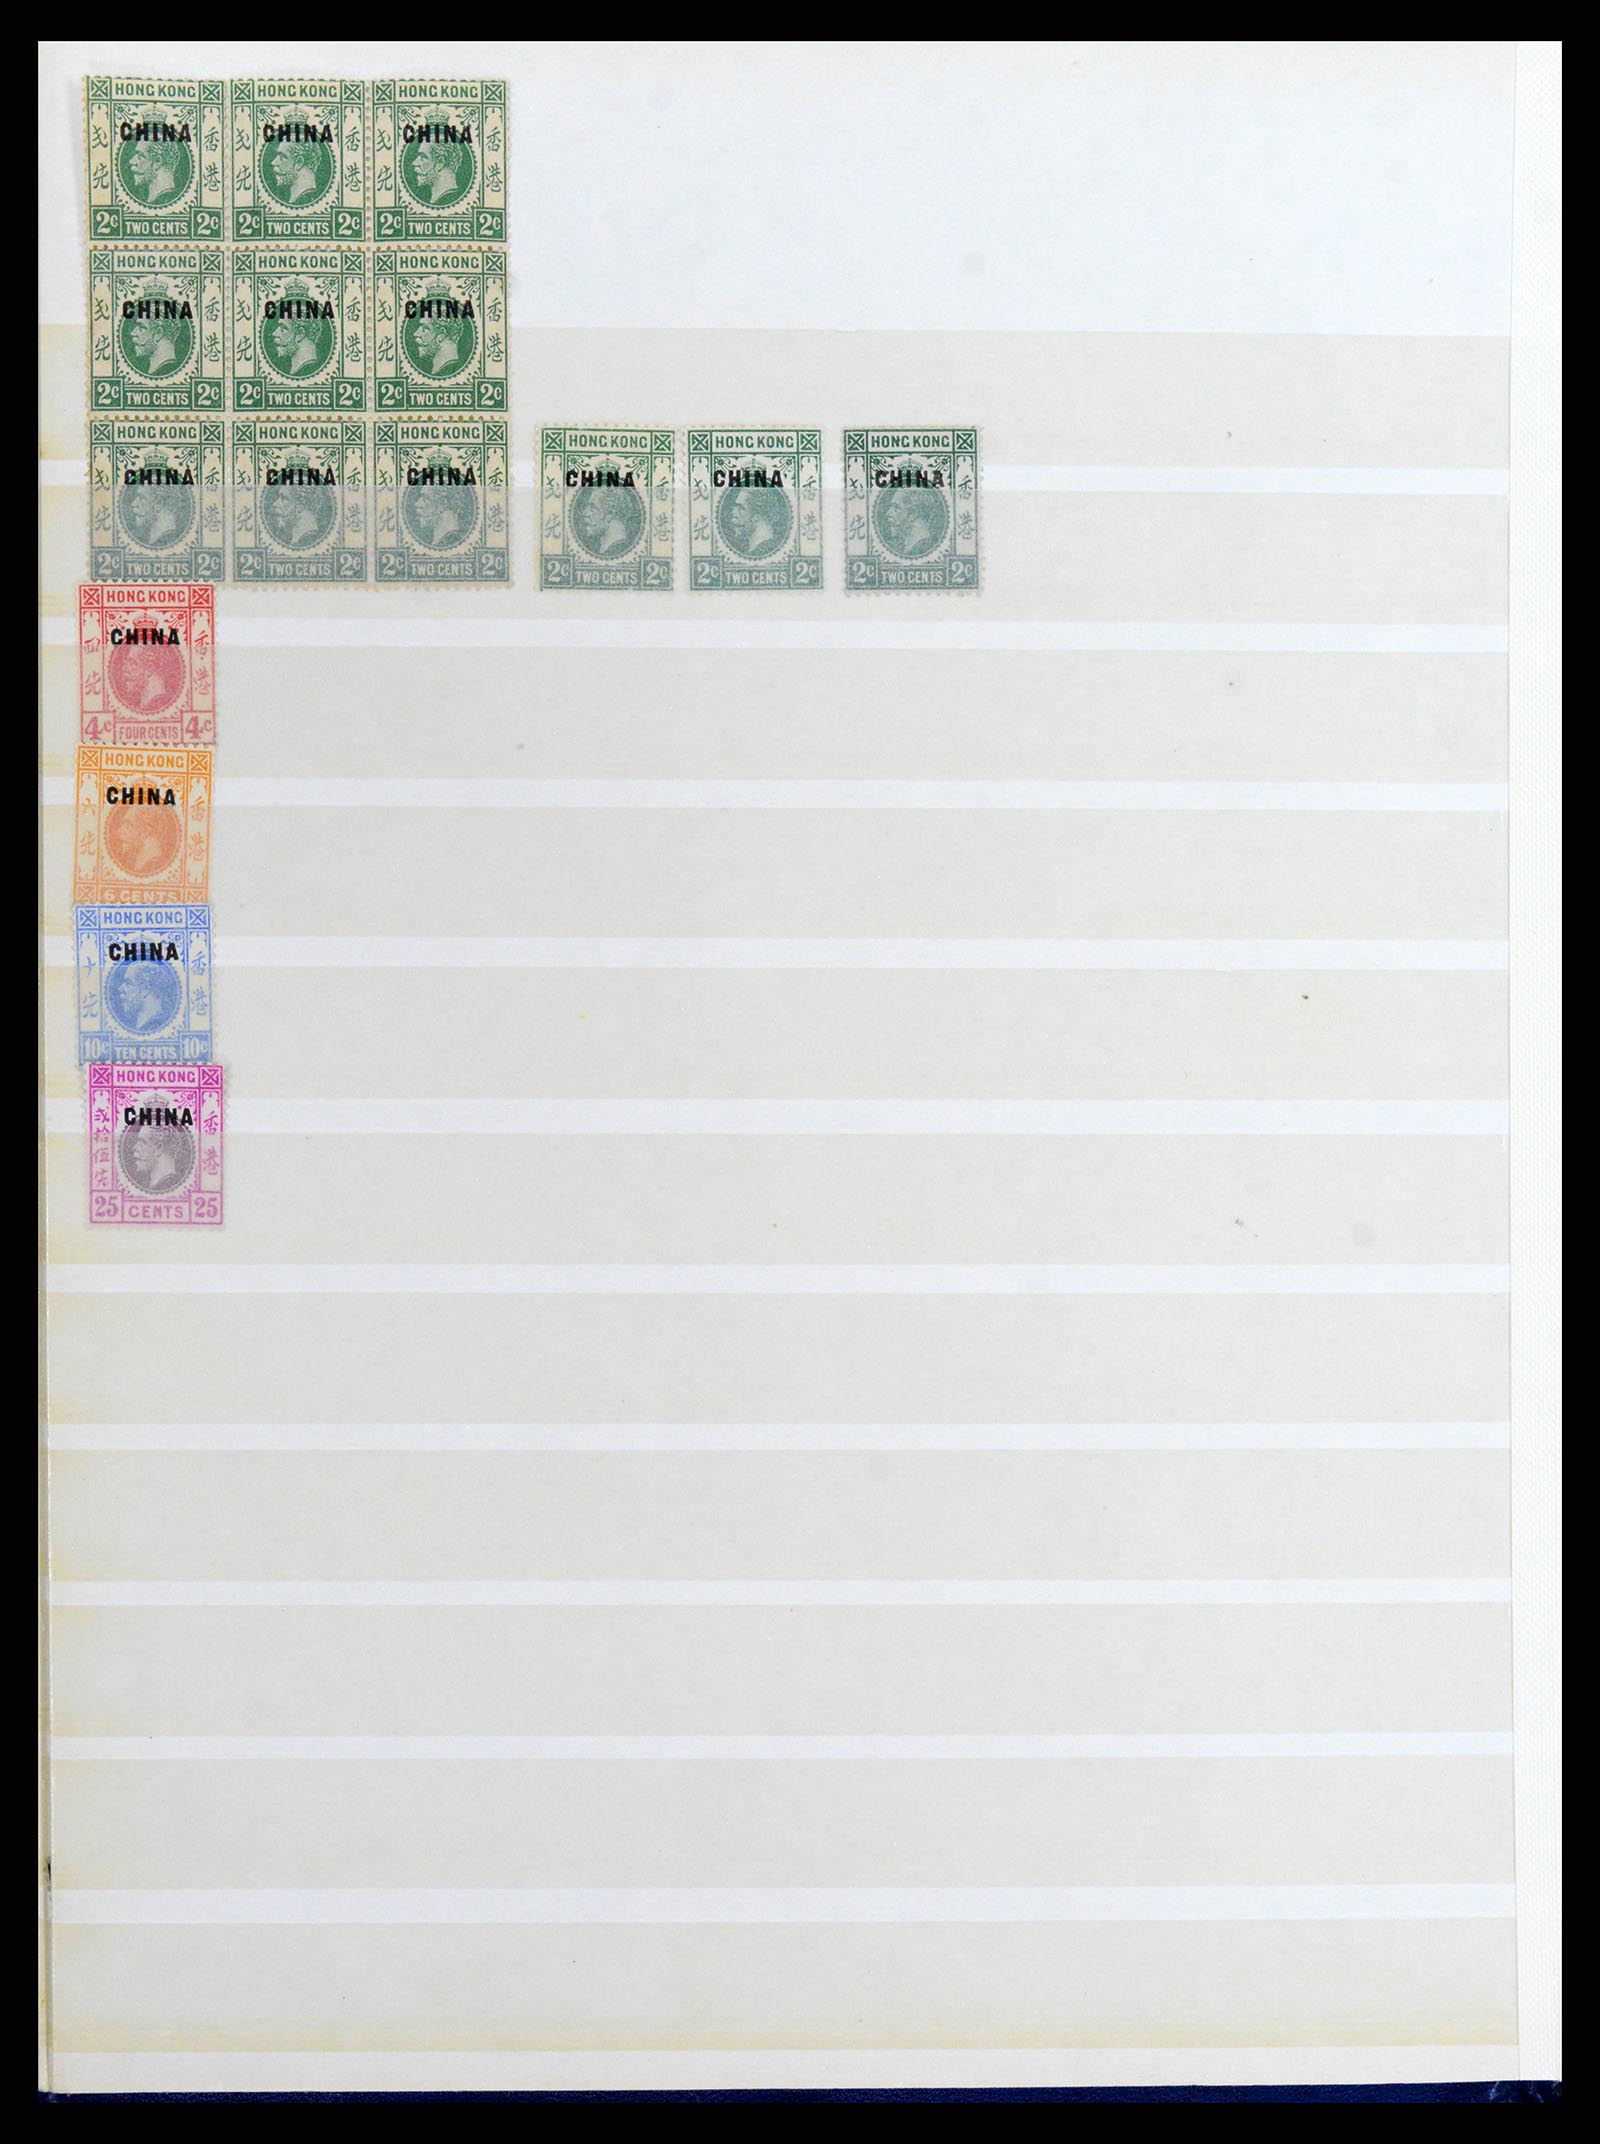 37358 051 - Stamp collection 37358 Hong Kong 1861-1997.